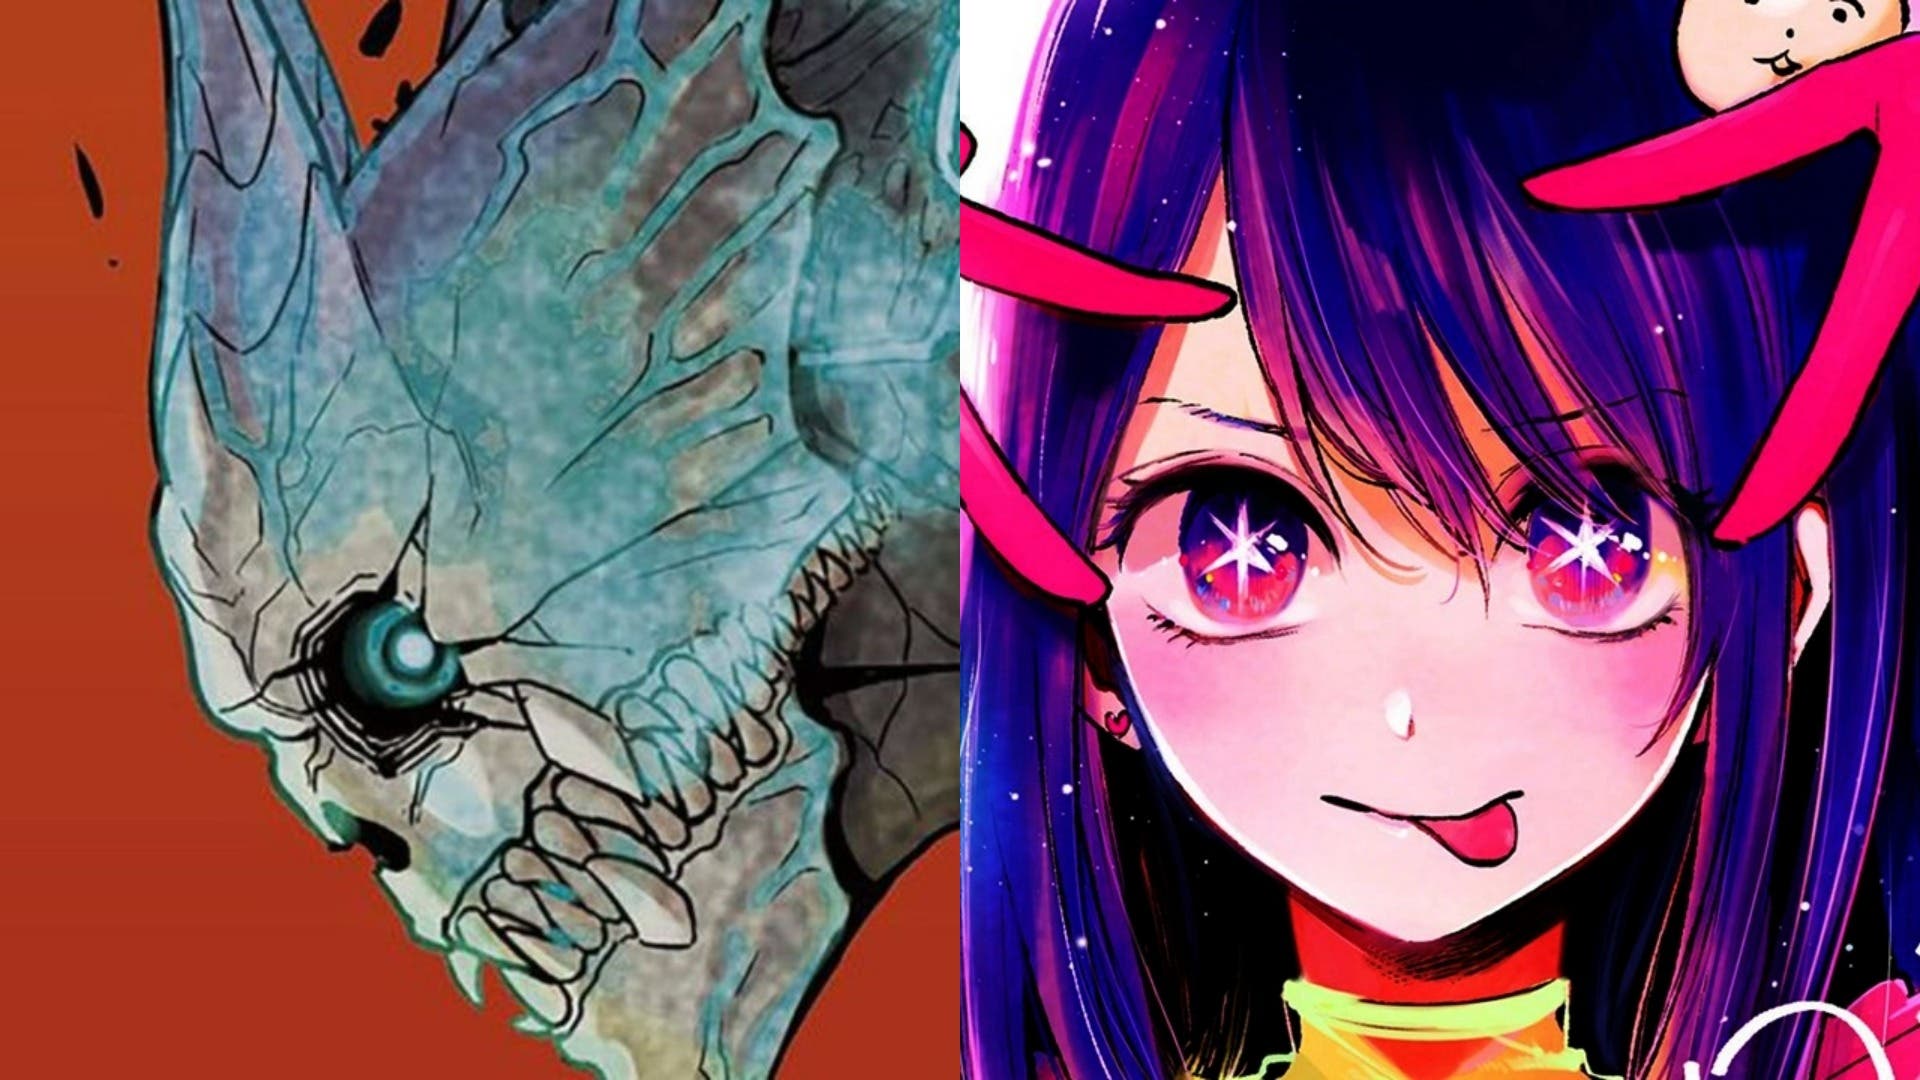 Kaiju No 8 Oshi No Ko Y Más Los 20 Mangas Más Prometedores En 2021